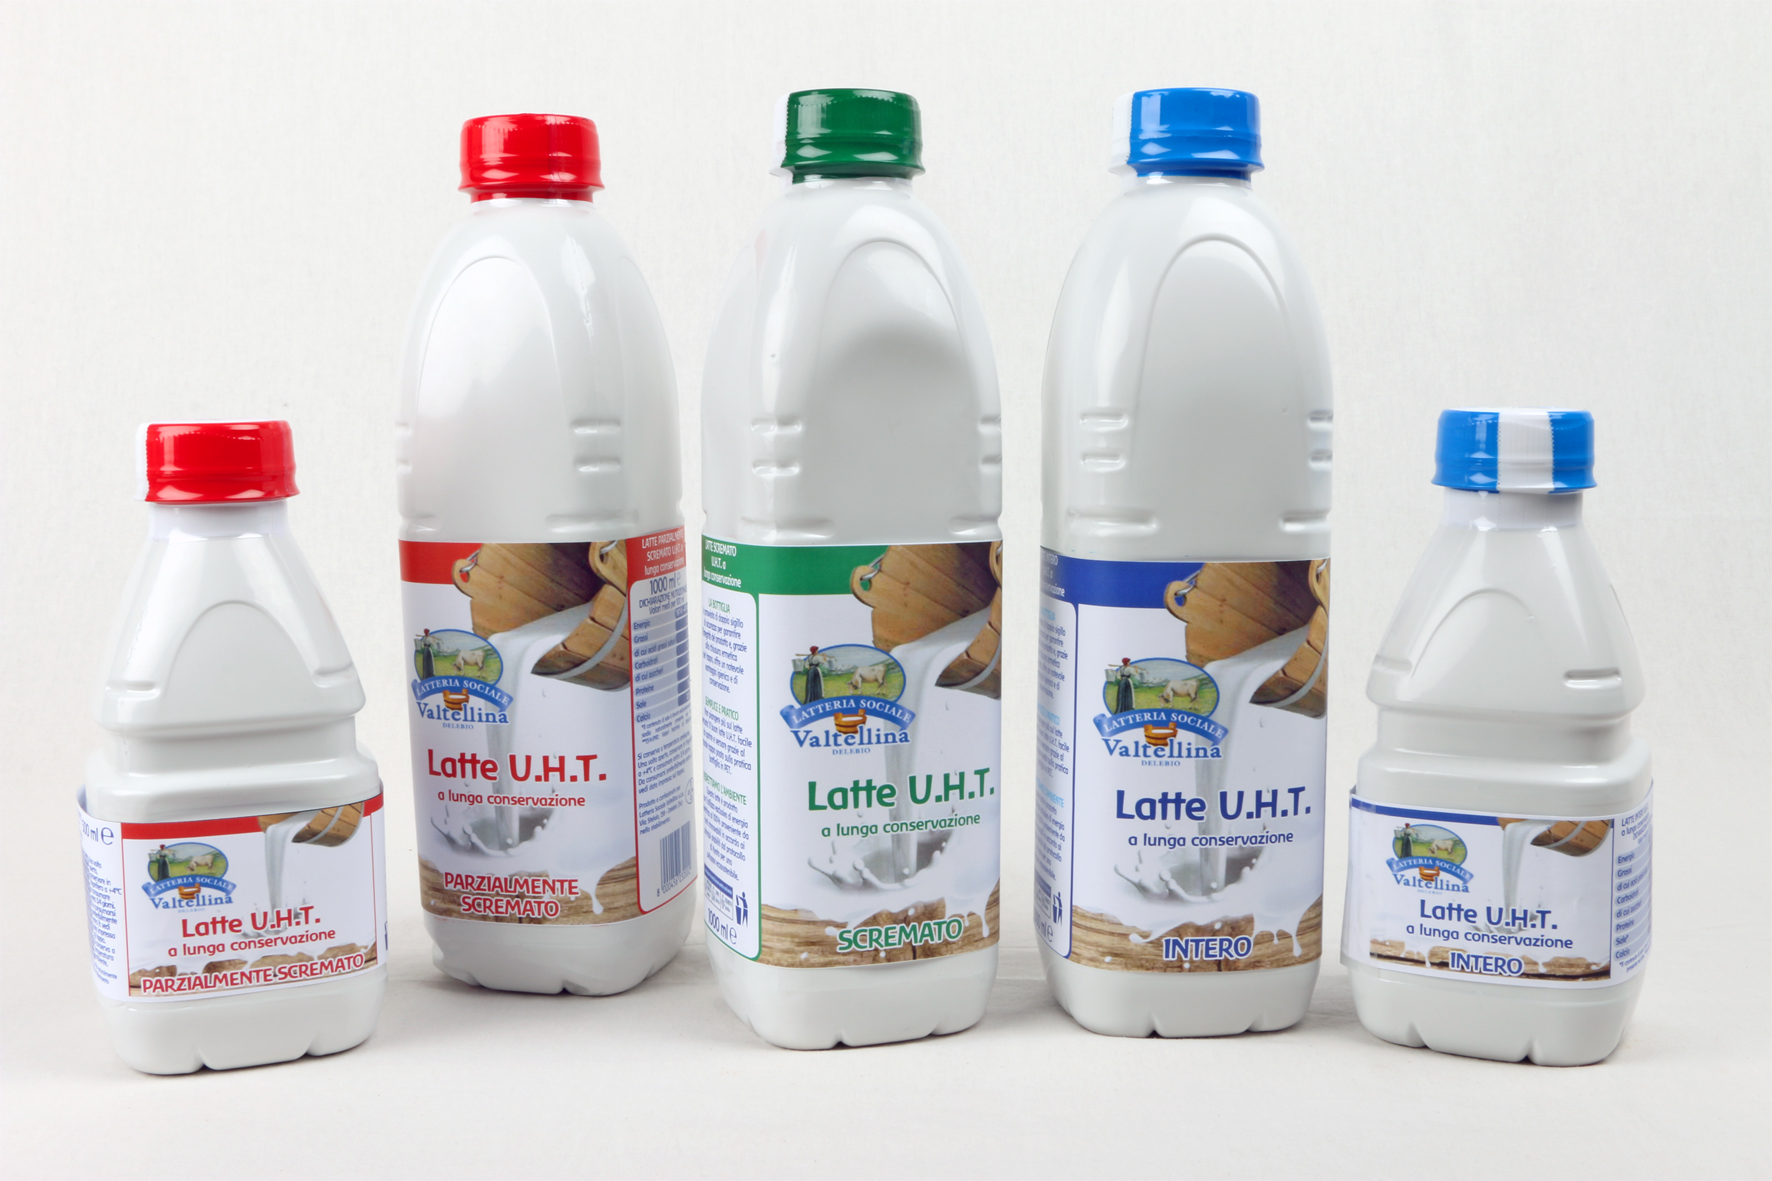 Latteria Sociale della Valtellina presenta il nuovo latte Uht